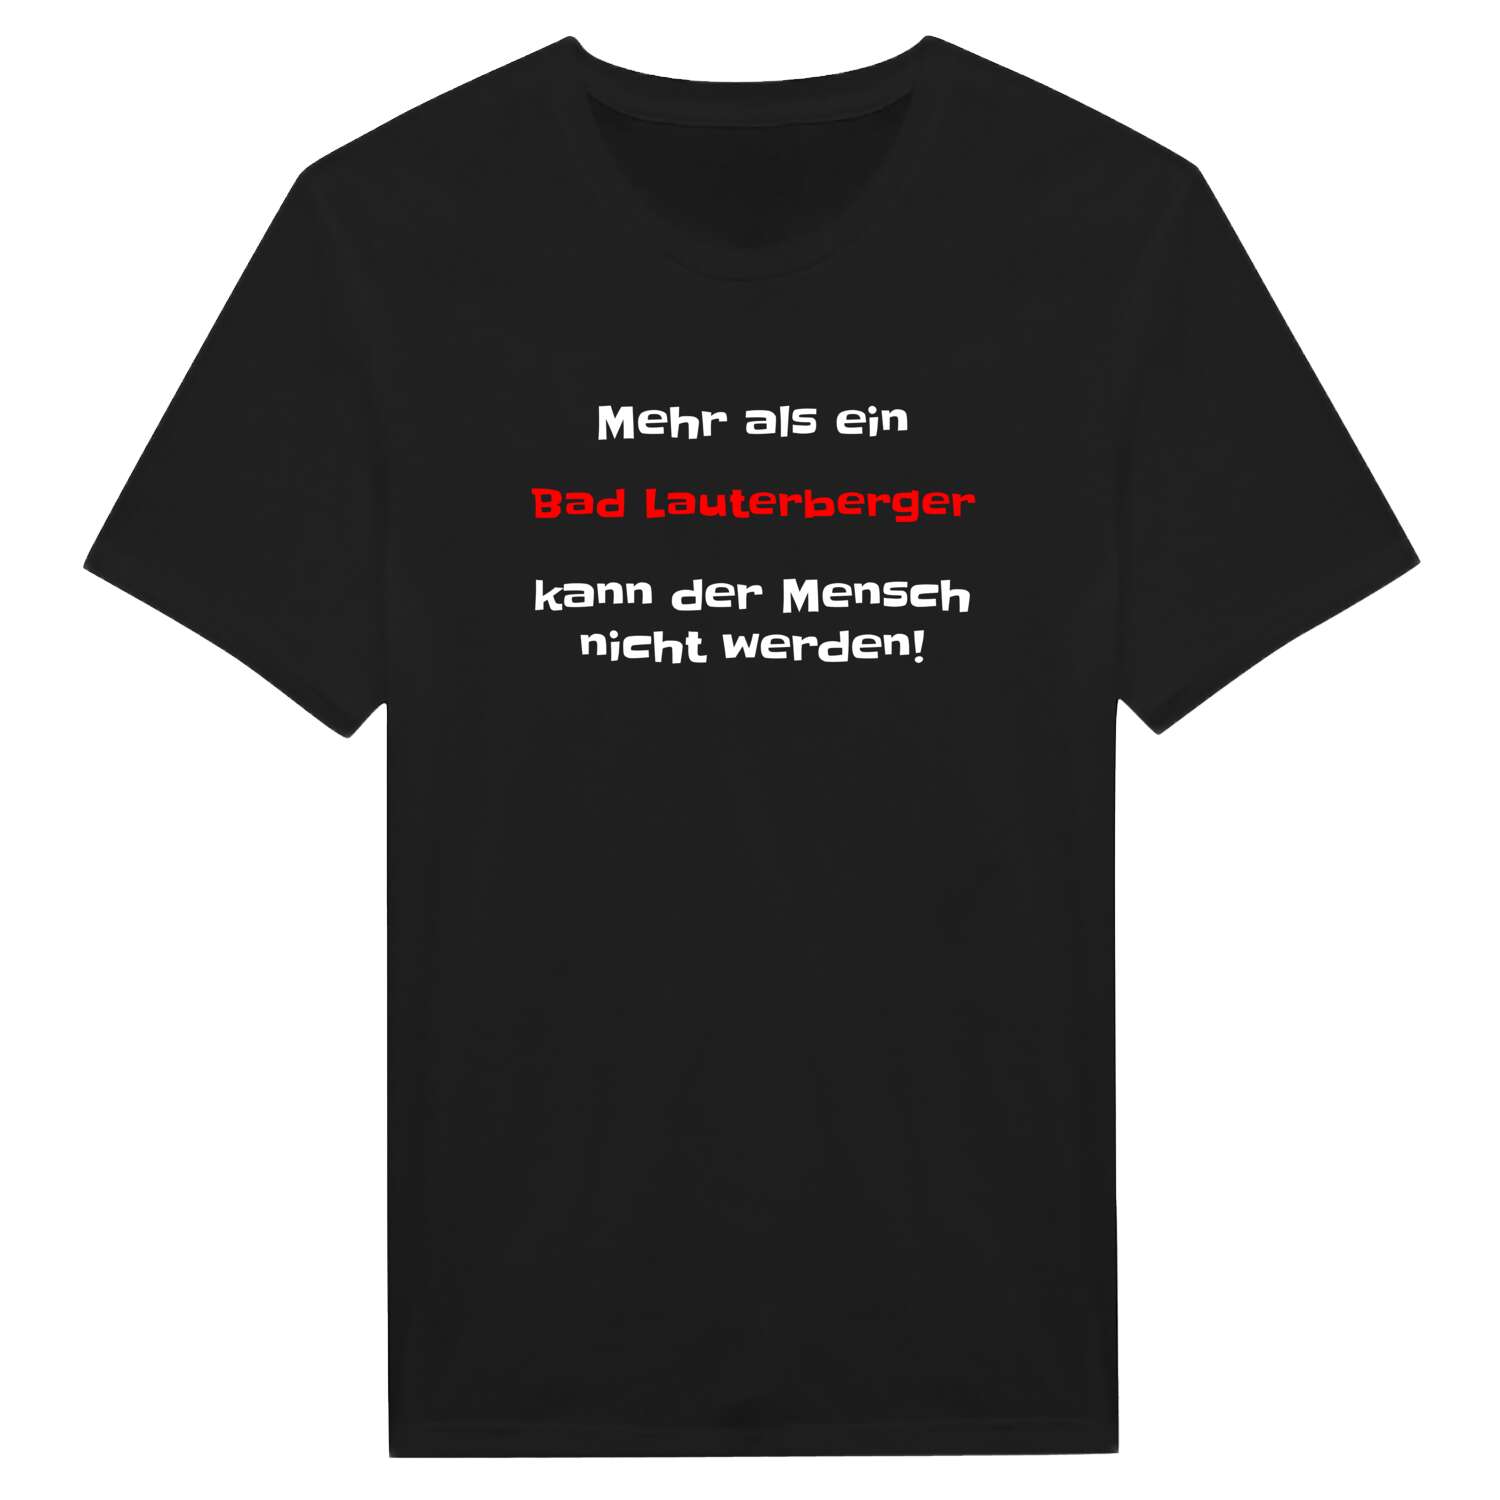 Bad Lauterberg T-Shirt »Mehr als ein«